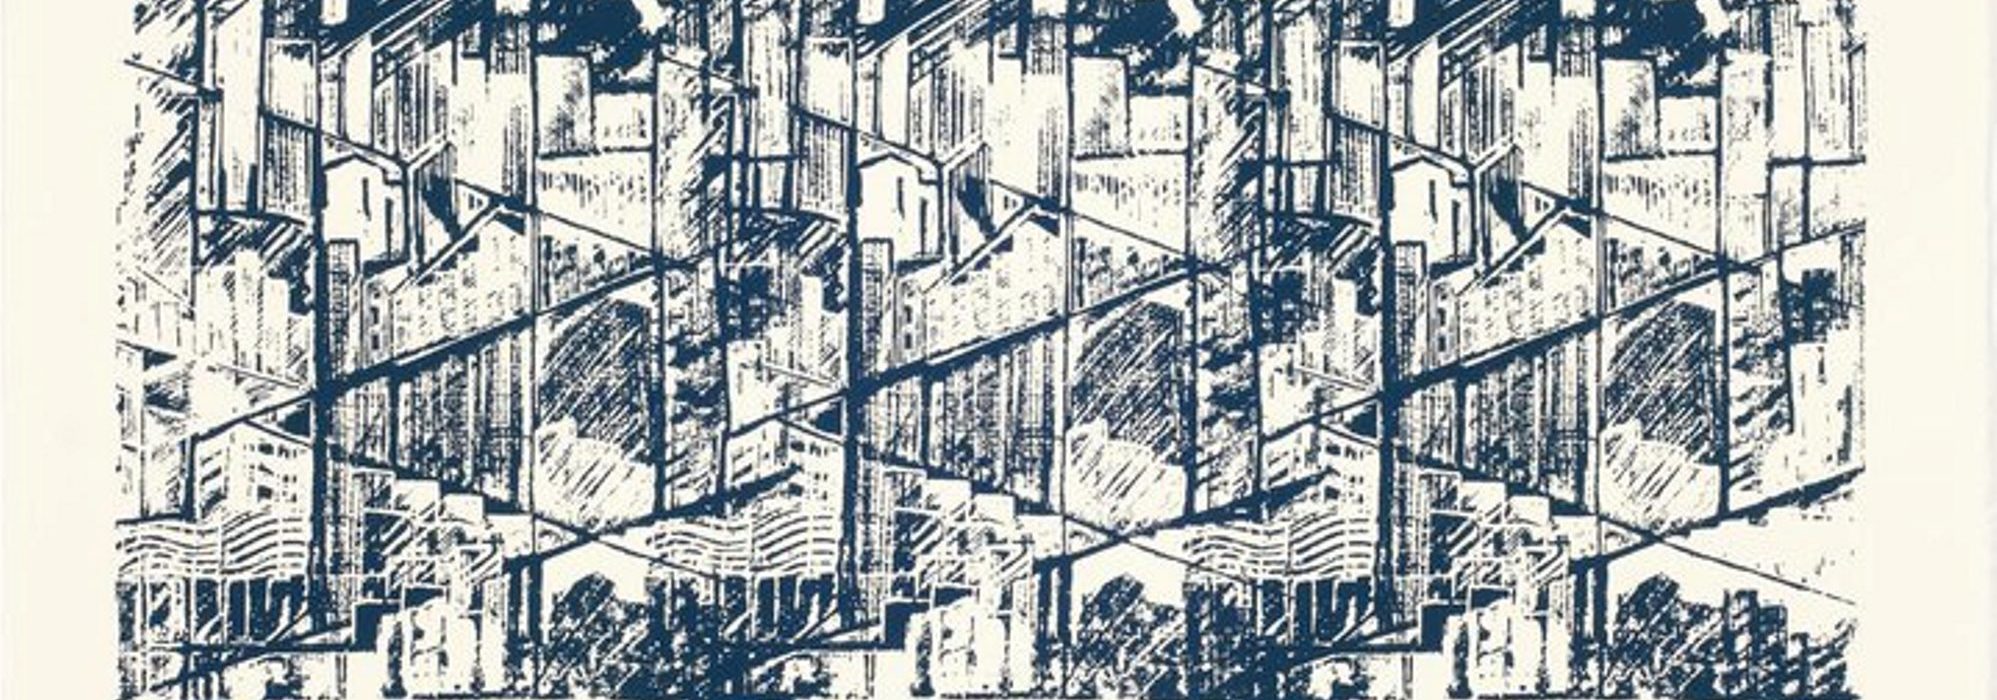 Imagem: Serigrafia da série Metrópolis (ZéCésar, 2010)